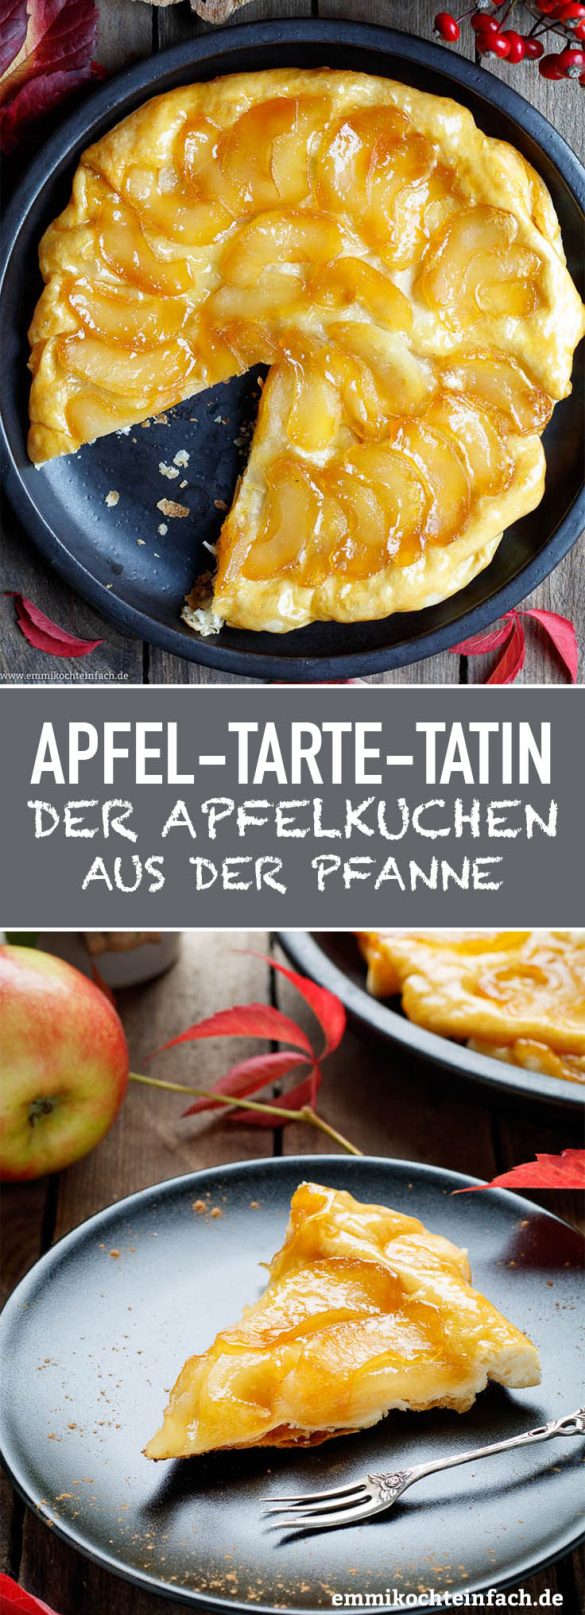 Apfel Tarte Tatin - Ein Kuchen-Dessert aus der Pfanne - emmikochteinfach